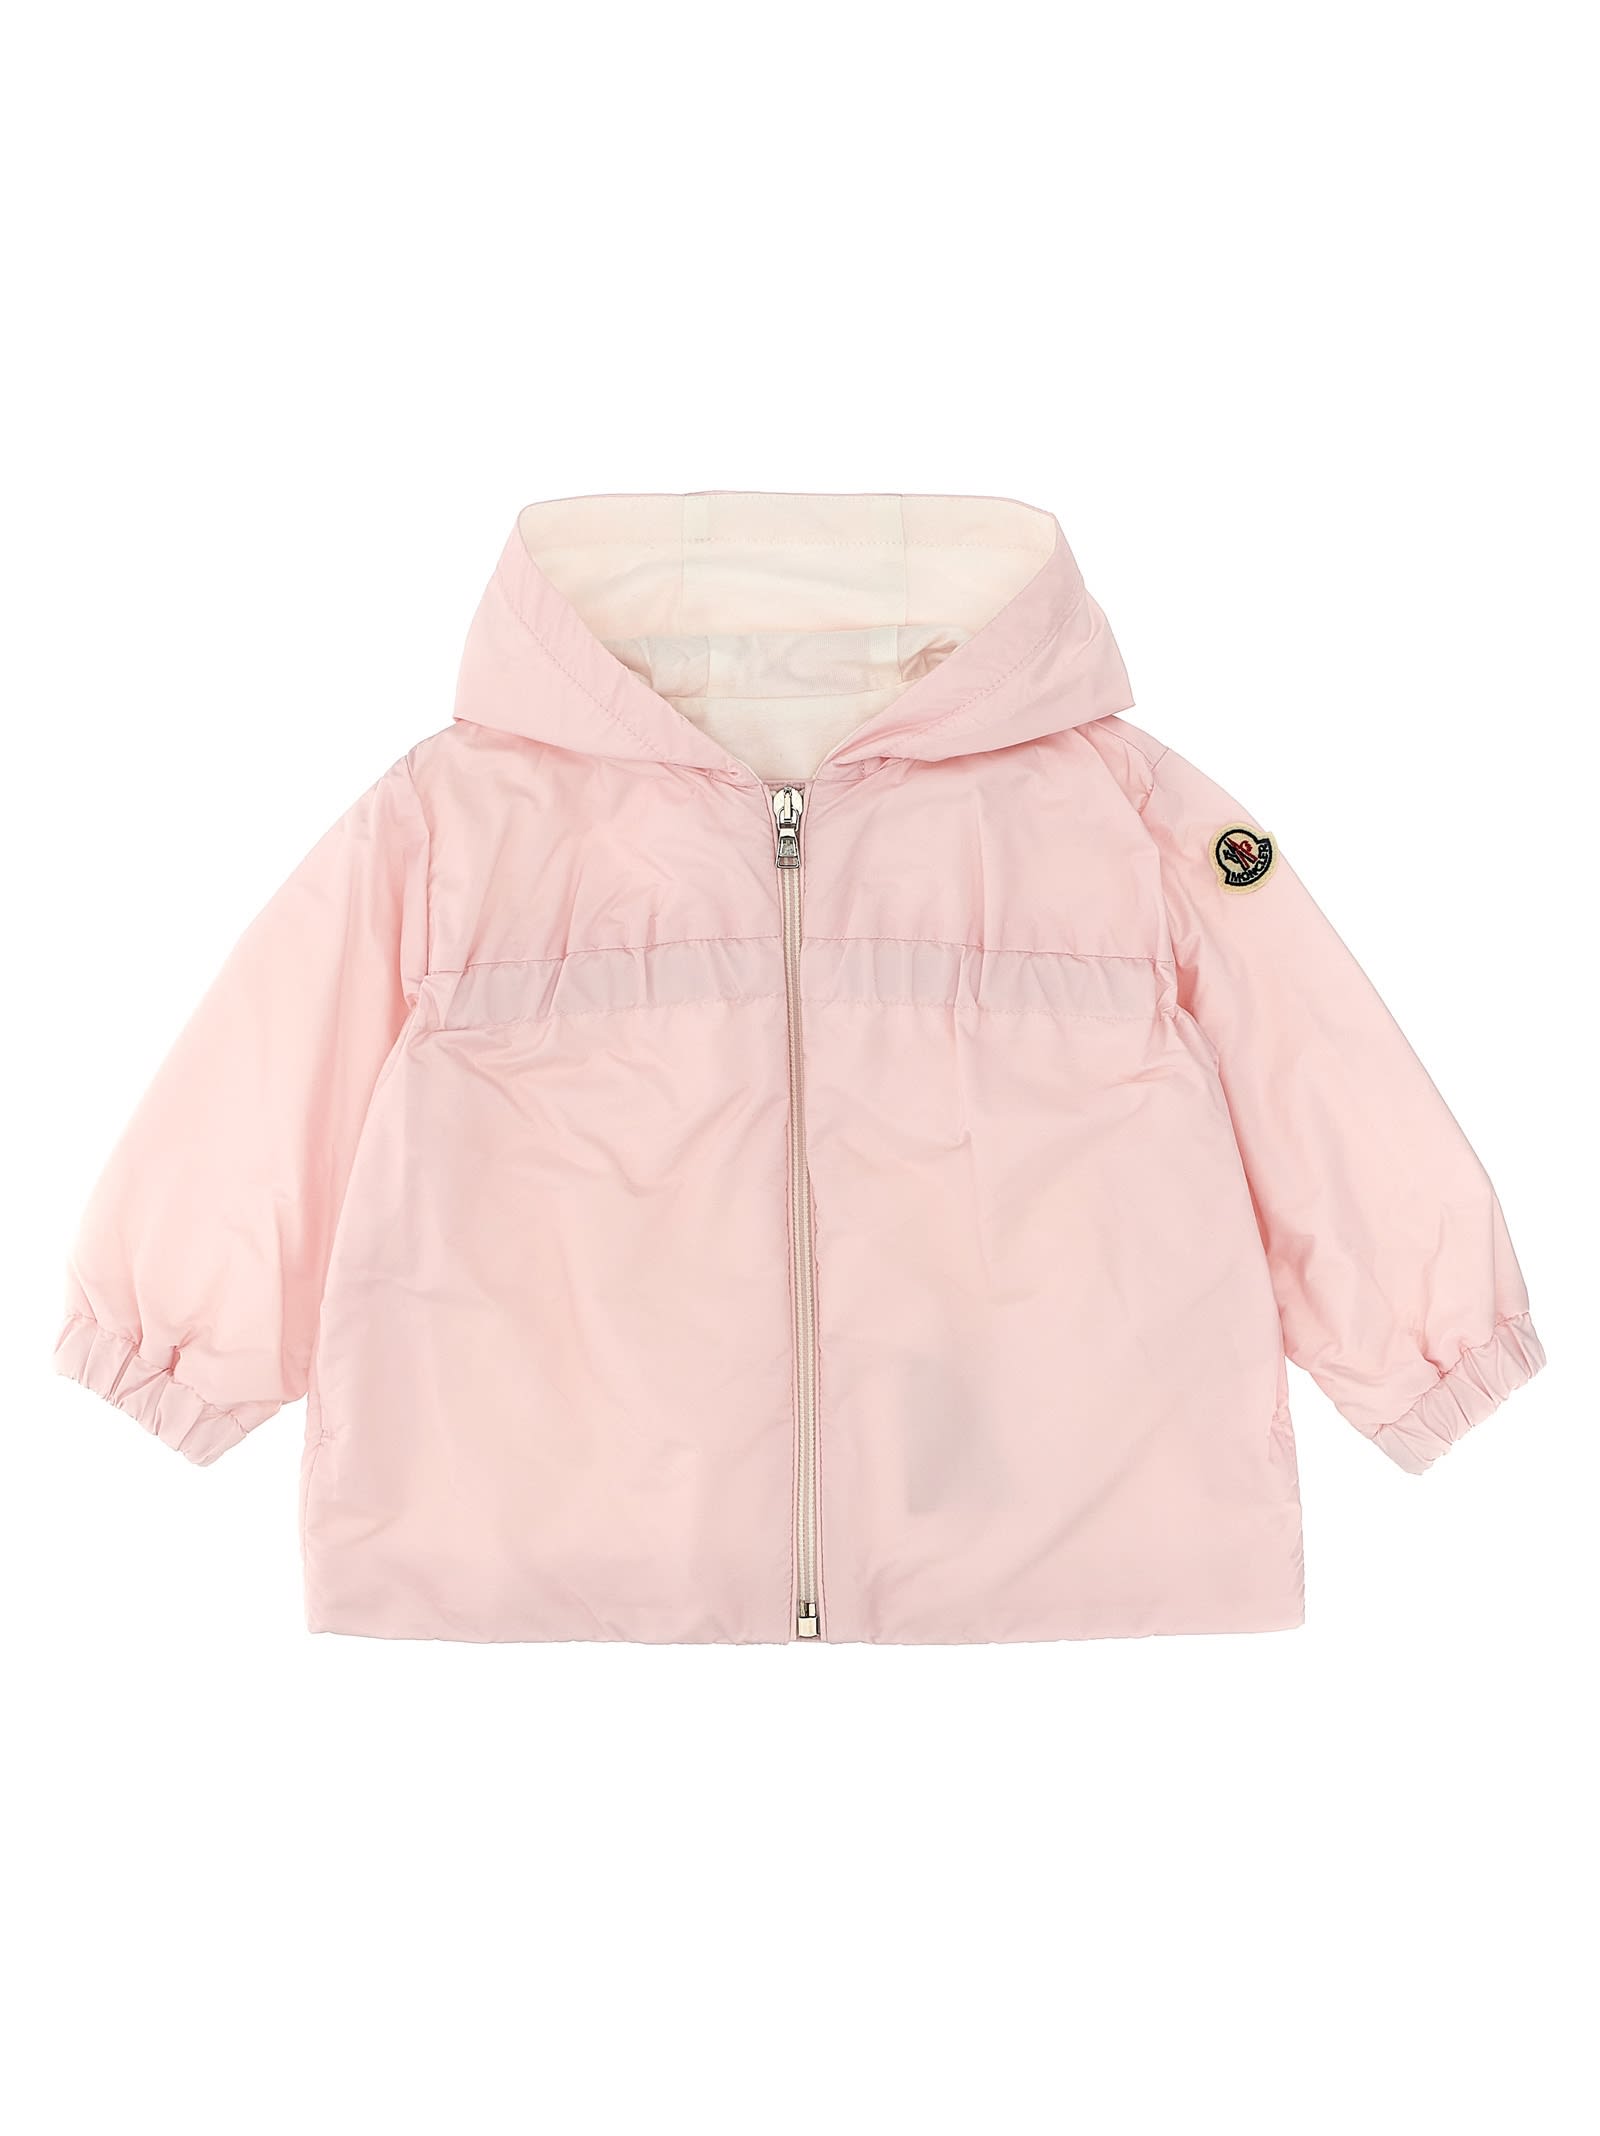 Moncler Kids' Raka Hooded Jacket In Pink